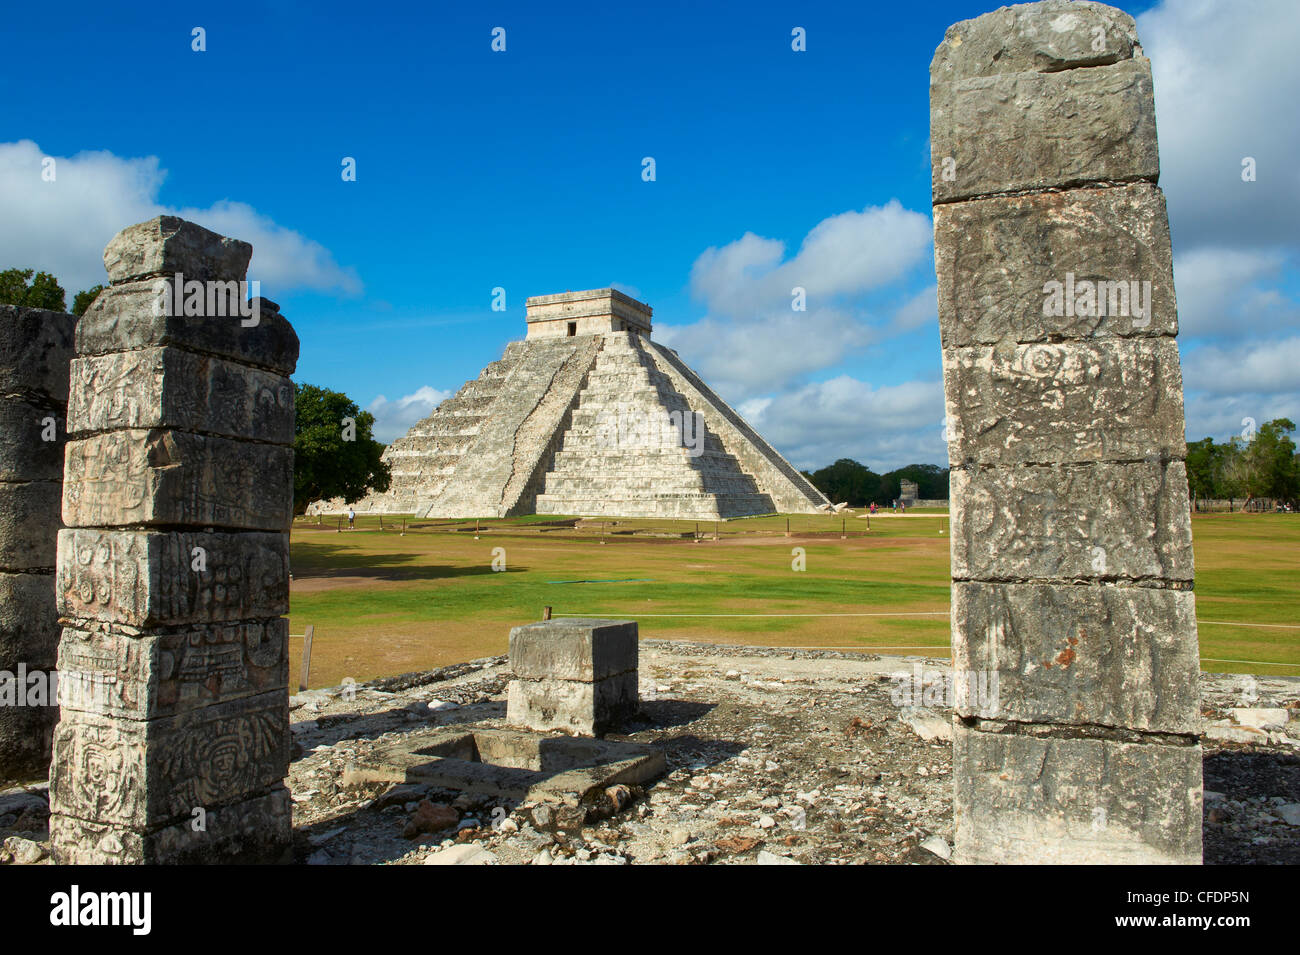 El Castillo pyramide (Temple de Kukulcan) dans les ruines mayas de Chichen Itza, Site du patrimoine mondial de l'UNESCO, Yucatan, Mexique Banque D'Images